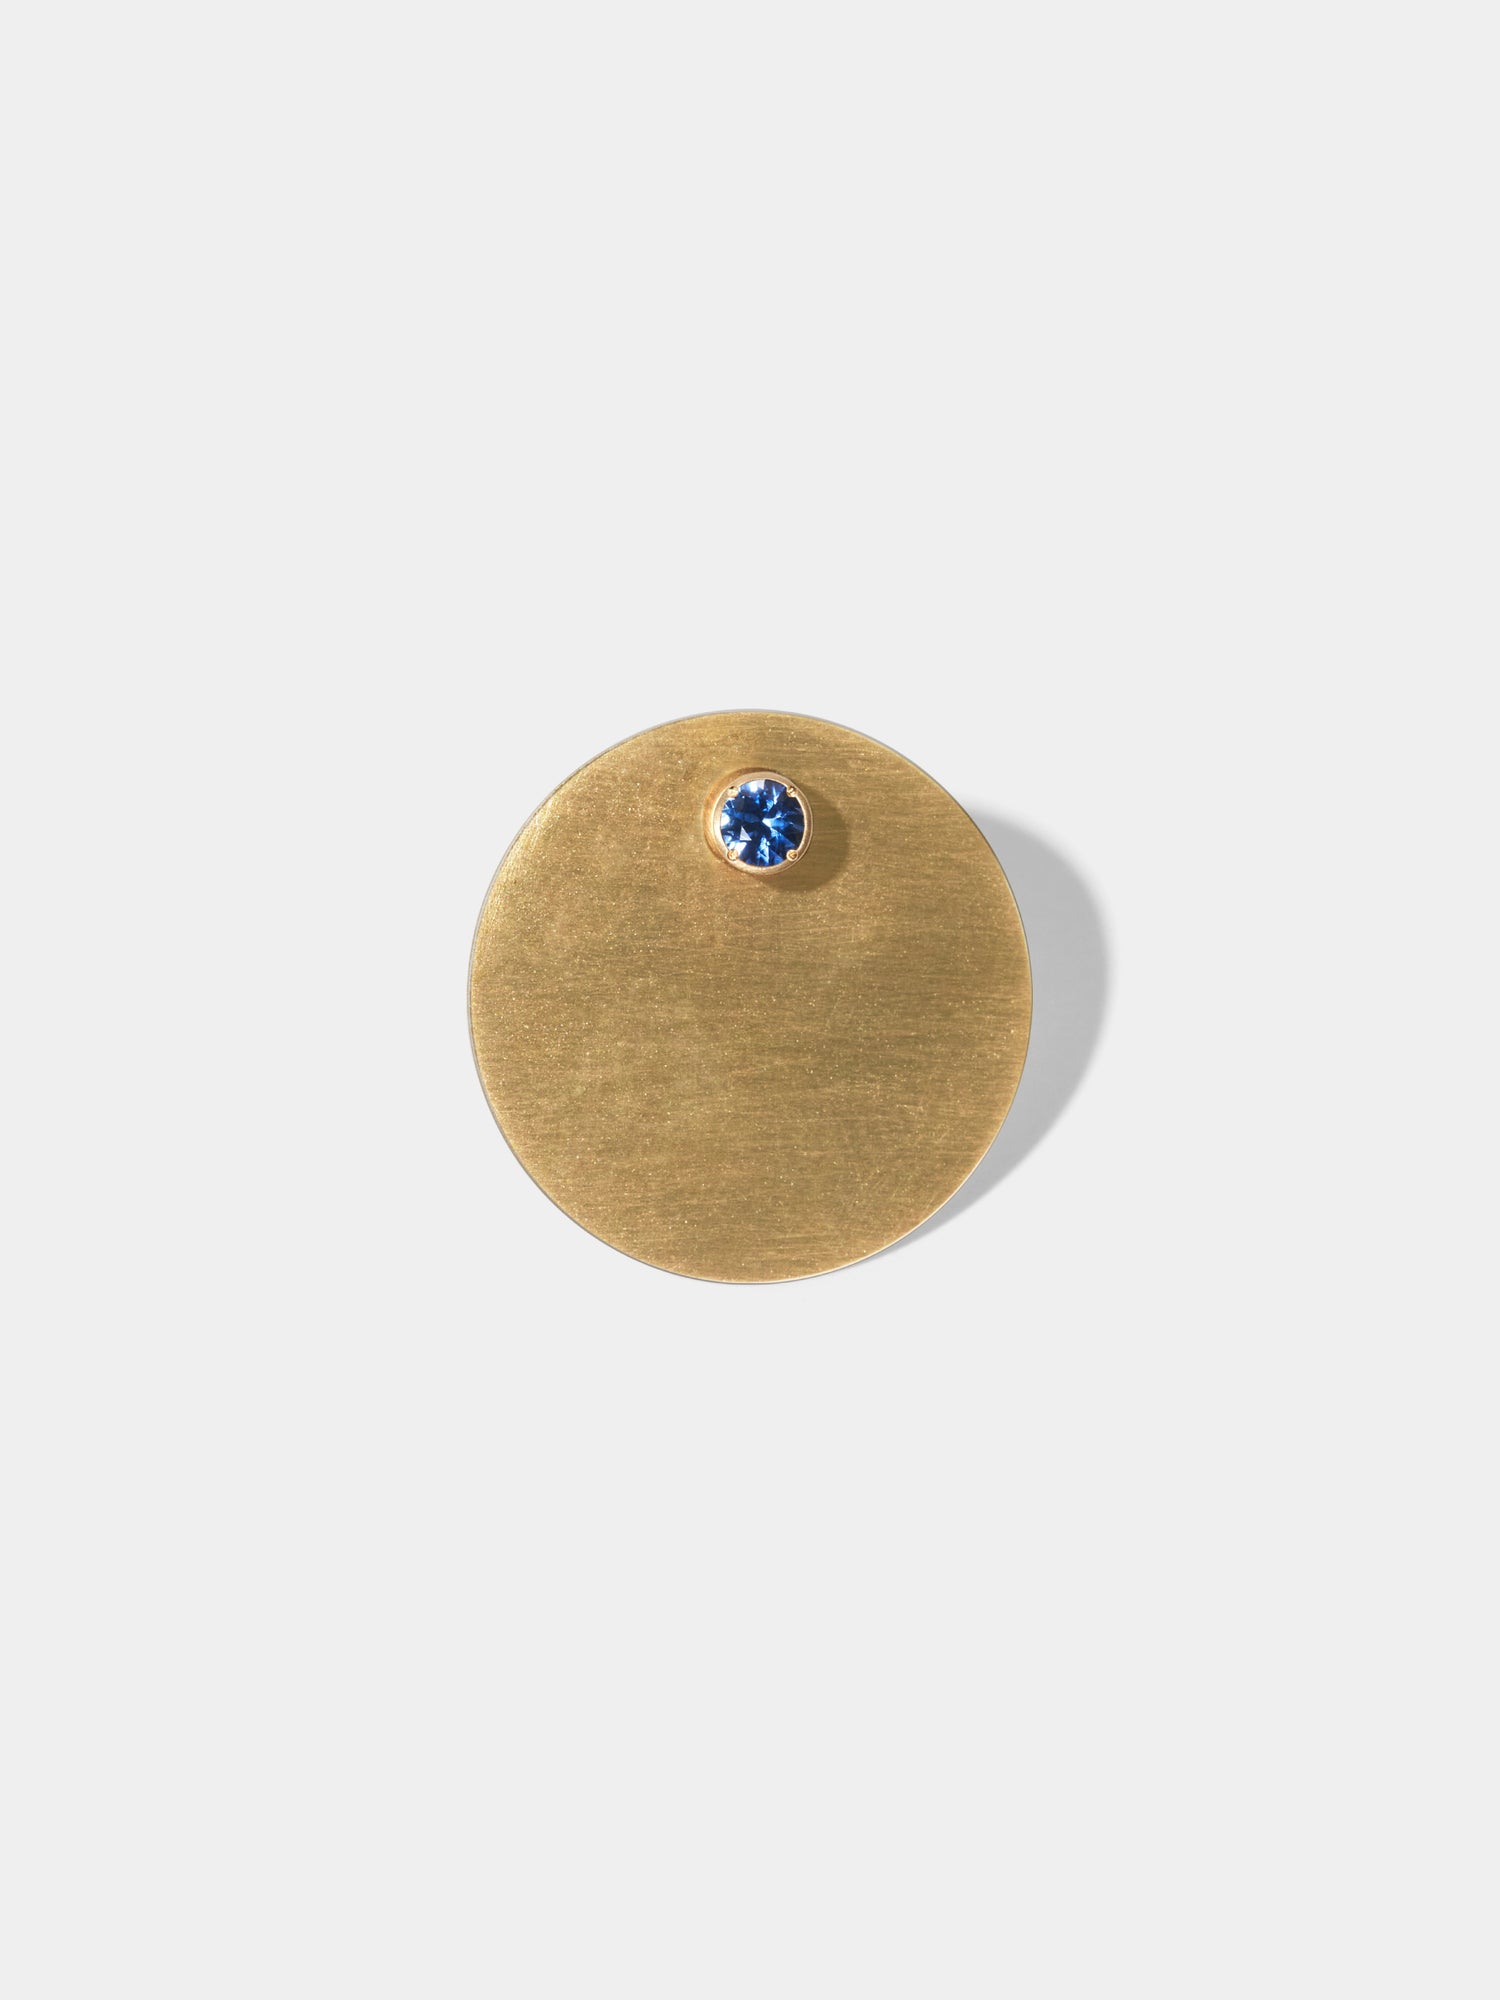 ASTERISM_Pierced Earring_Full Moon (満月) / Sapphire